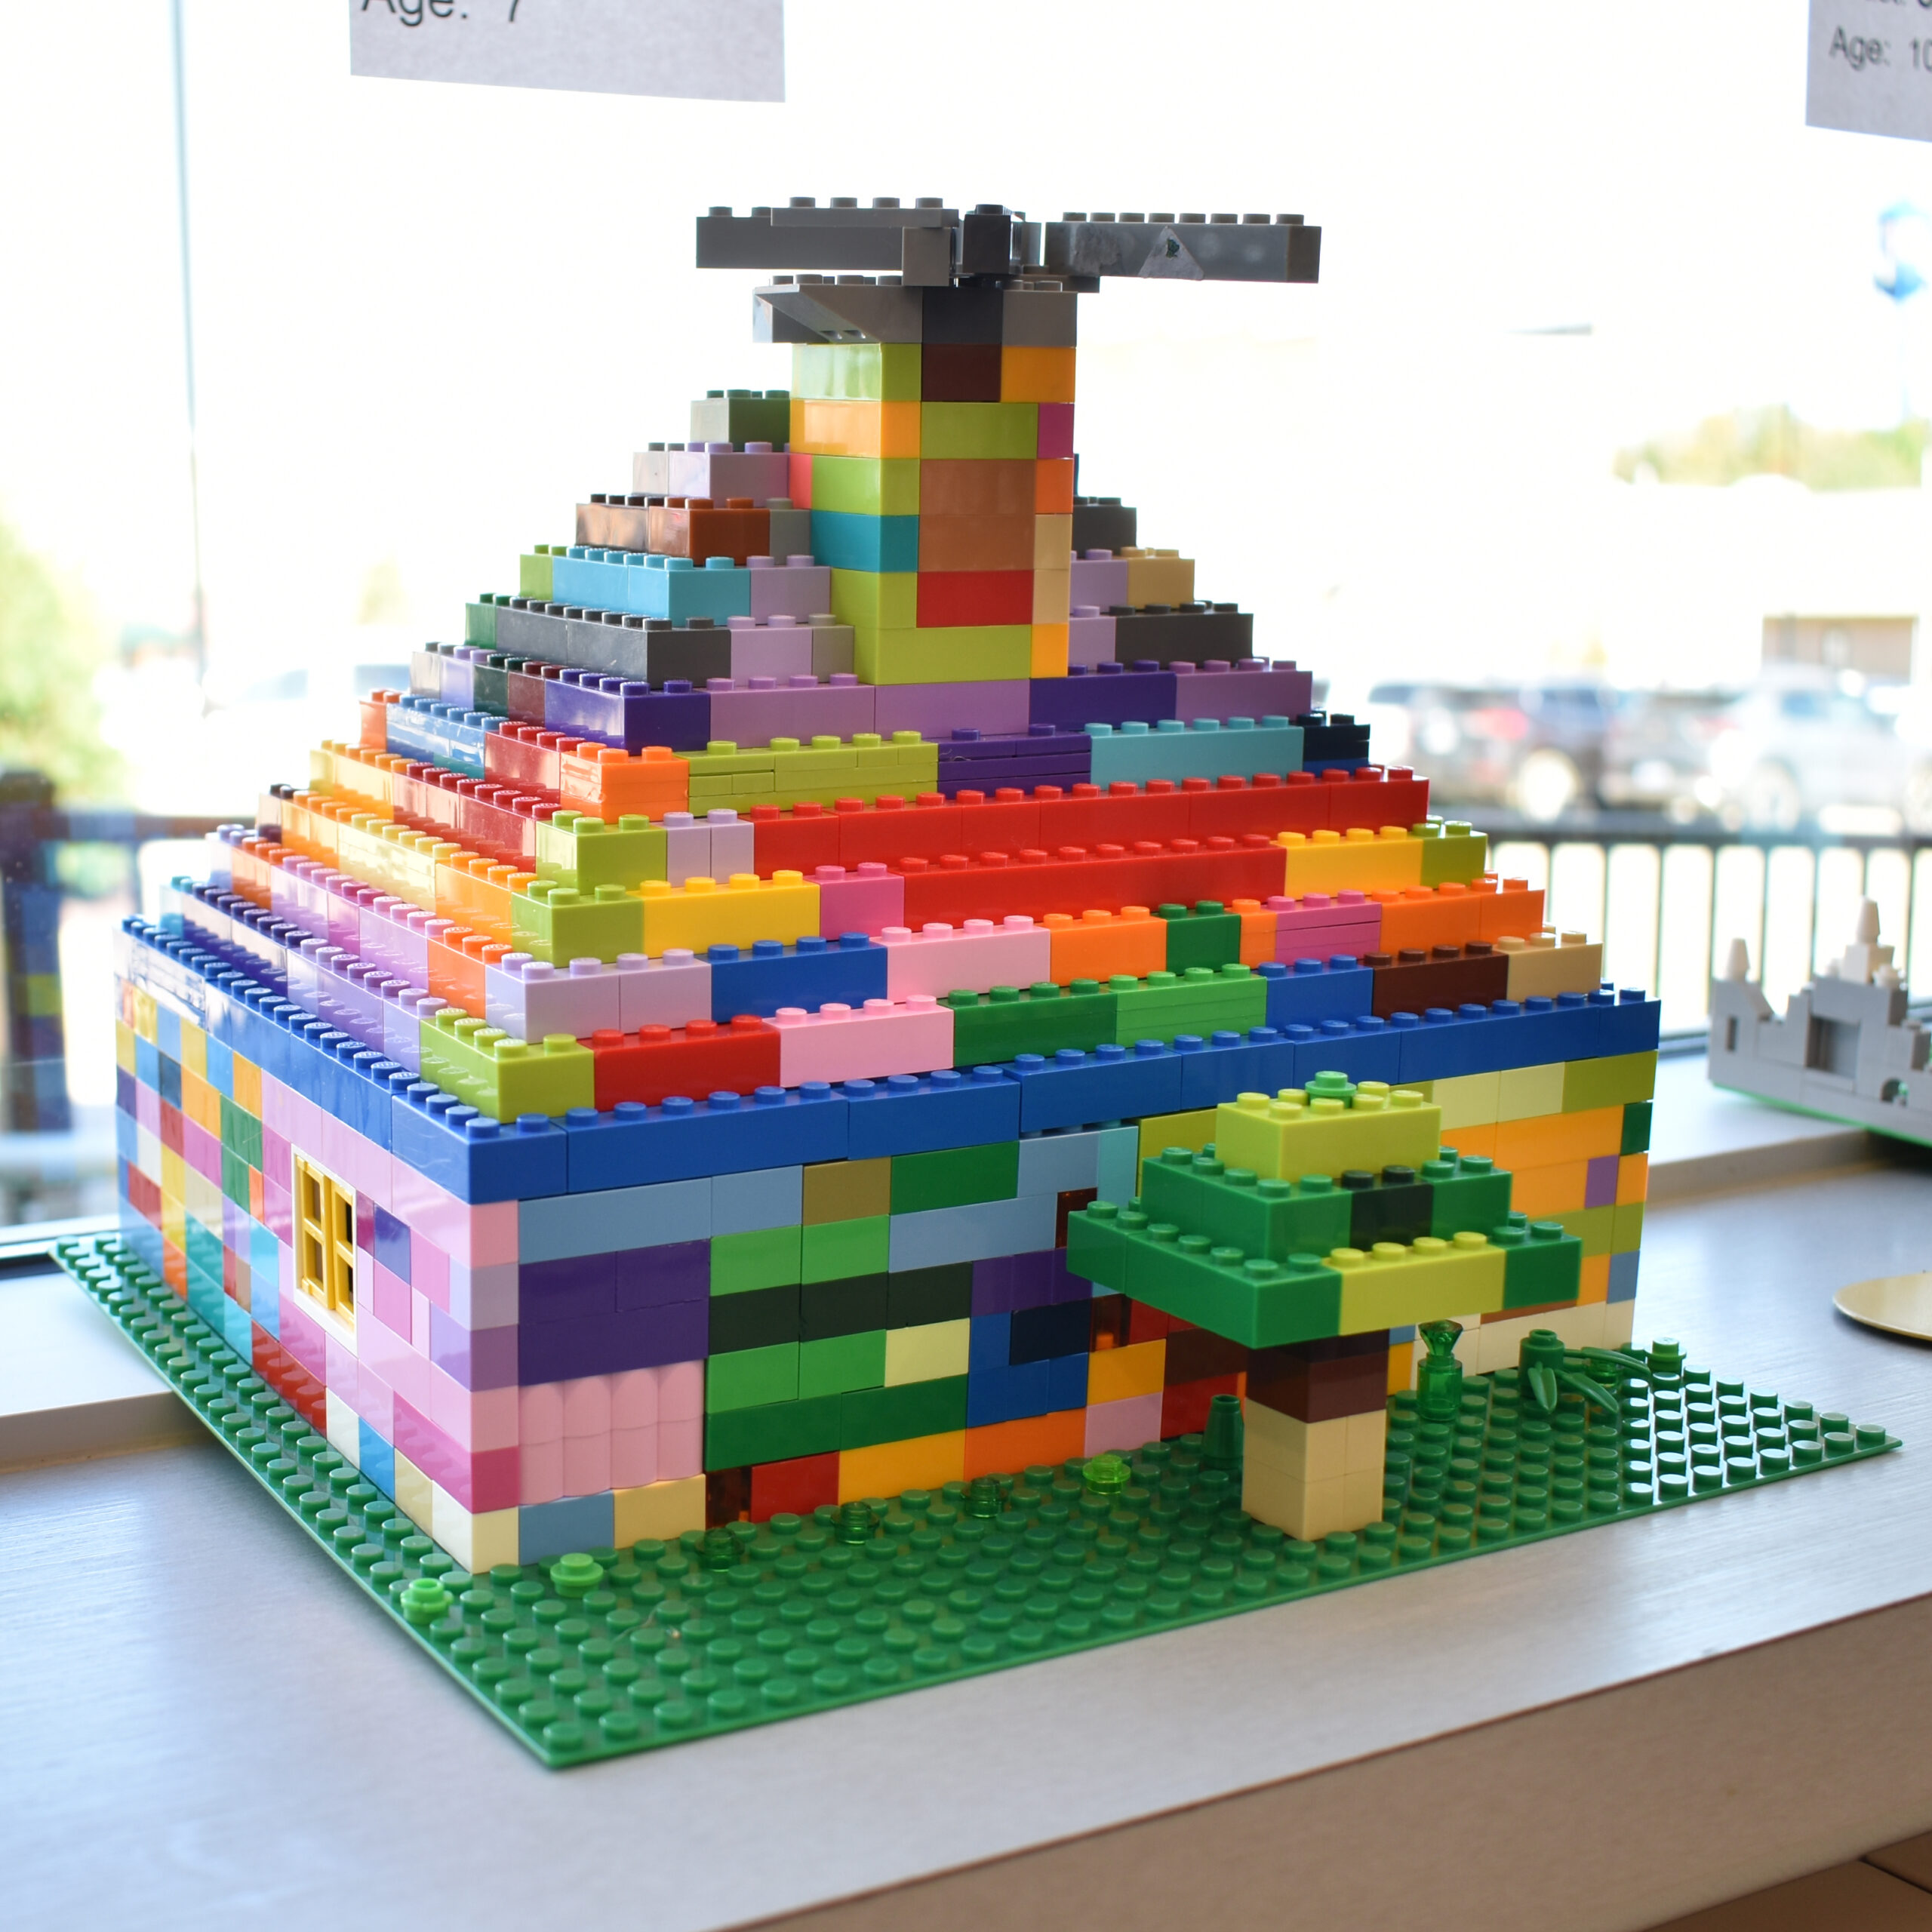 Awesome LEGO house